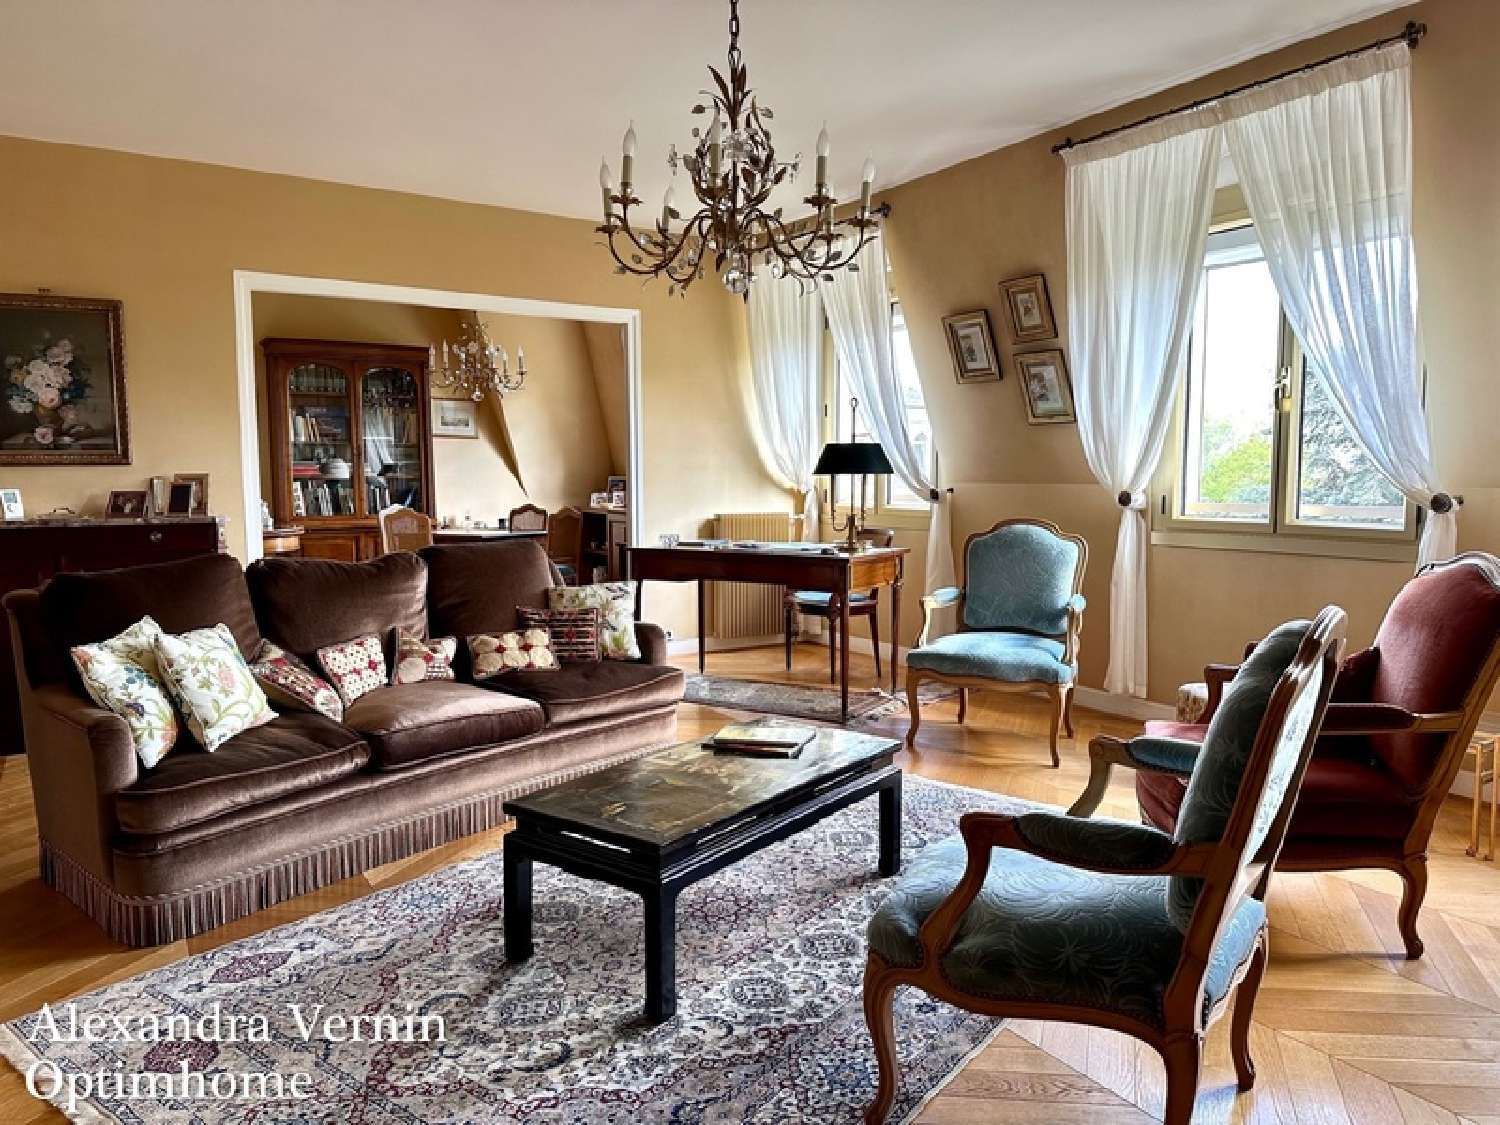  for sale apartment Saint-Germain-en-Laye Yvelines 4